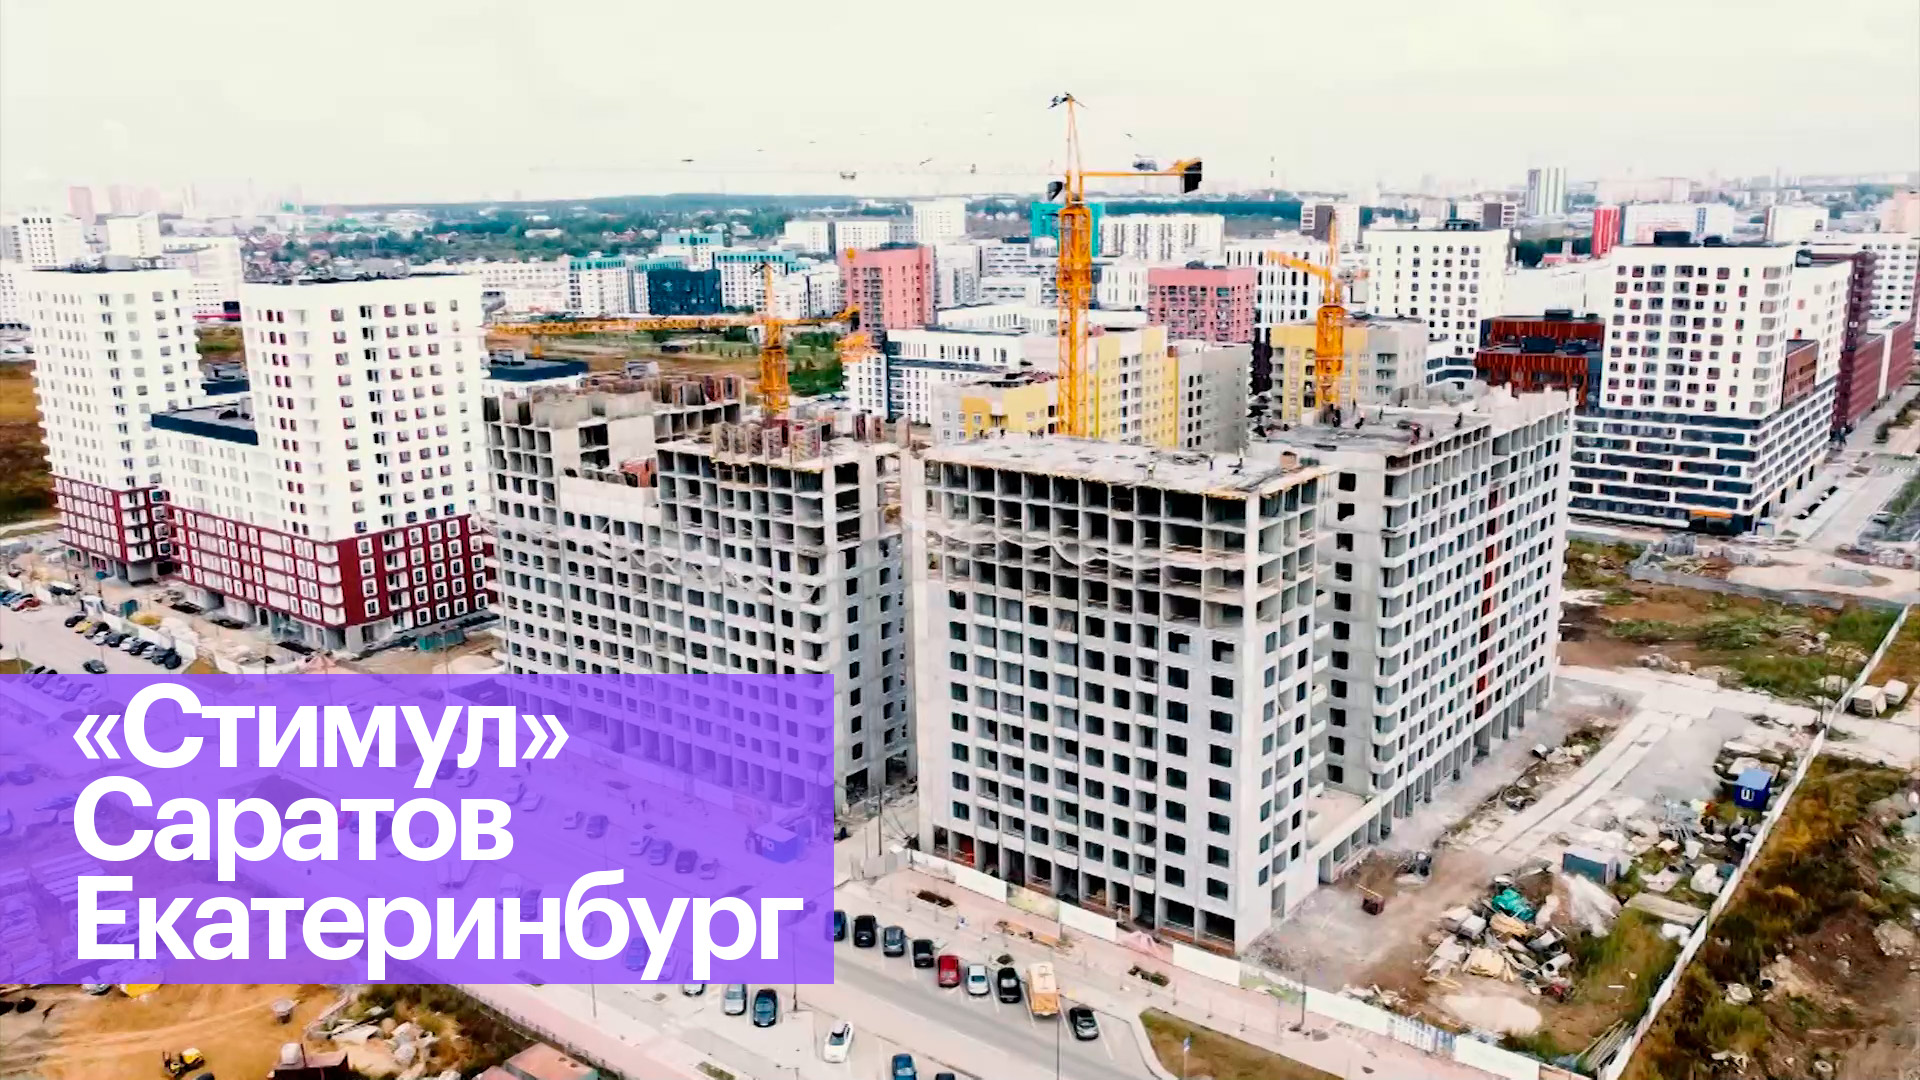 Как стимулировать строительство жилья. Пример Екатеринбурга и Саратова